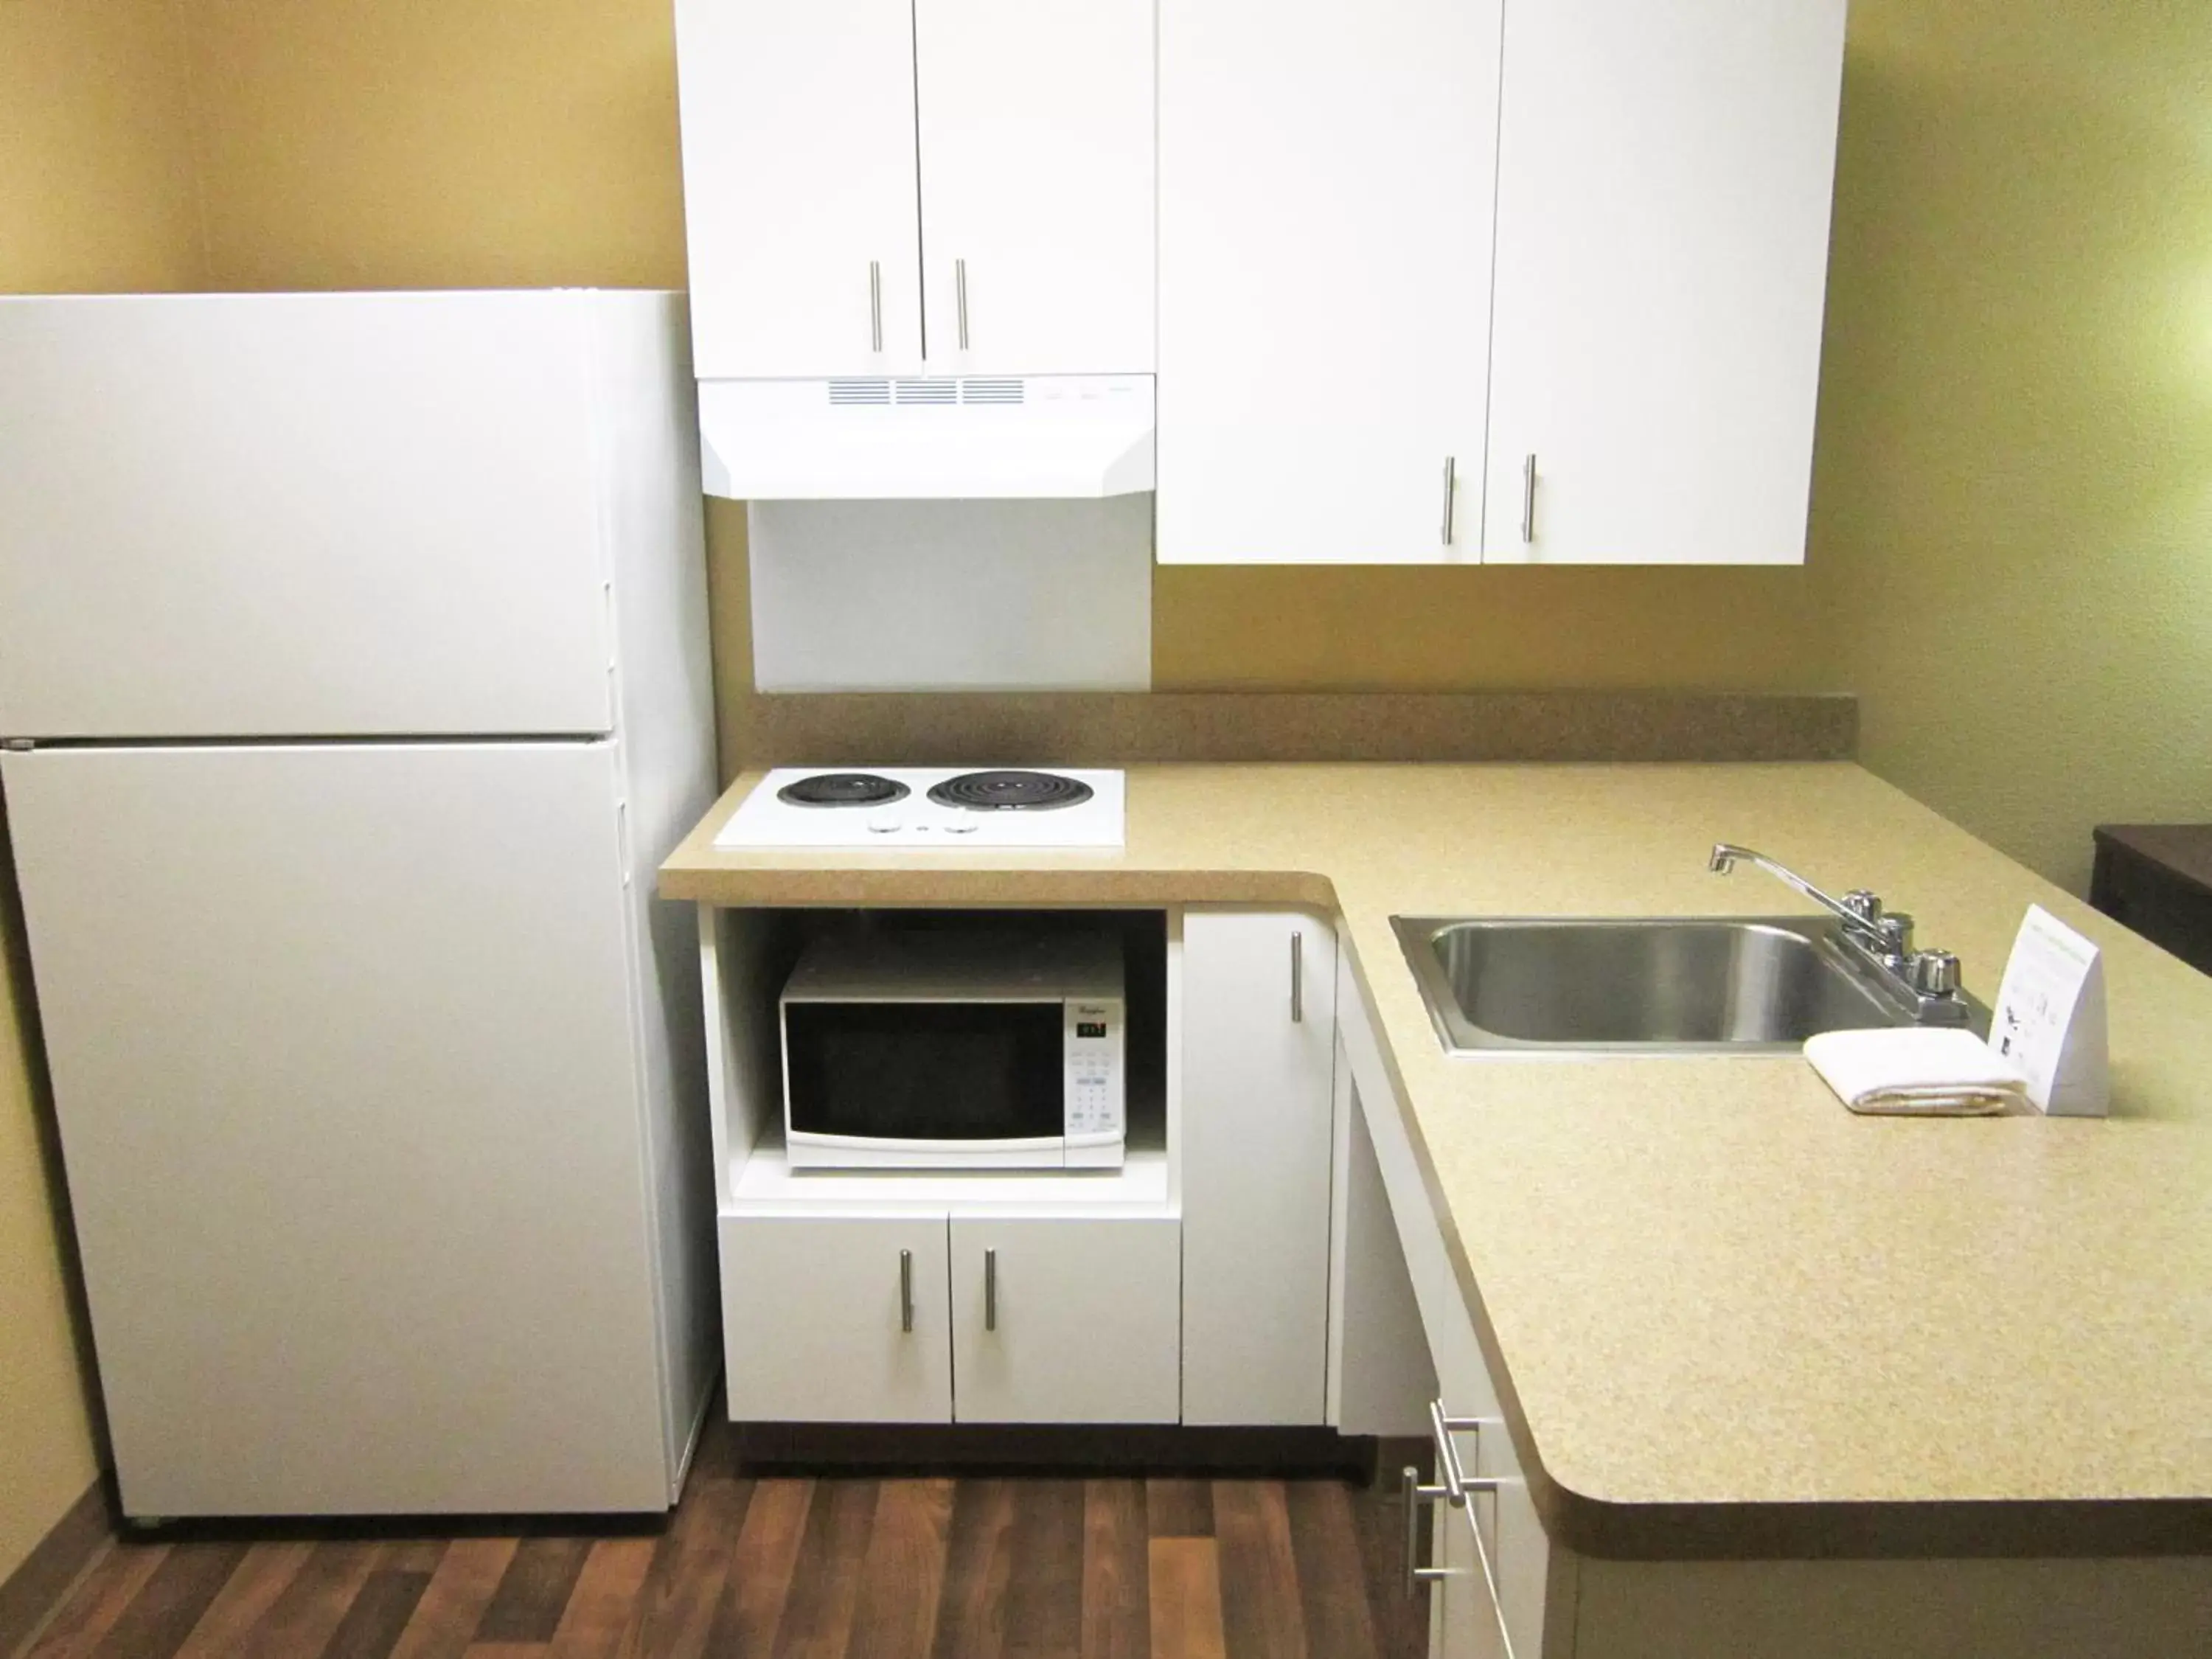 Kitchen or kitchenette, Kitchen/Kitchenette in Extended Stay America Suites - Seattle - Lynnwood